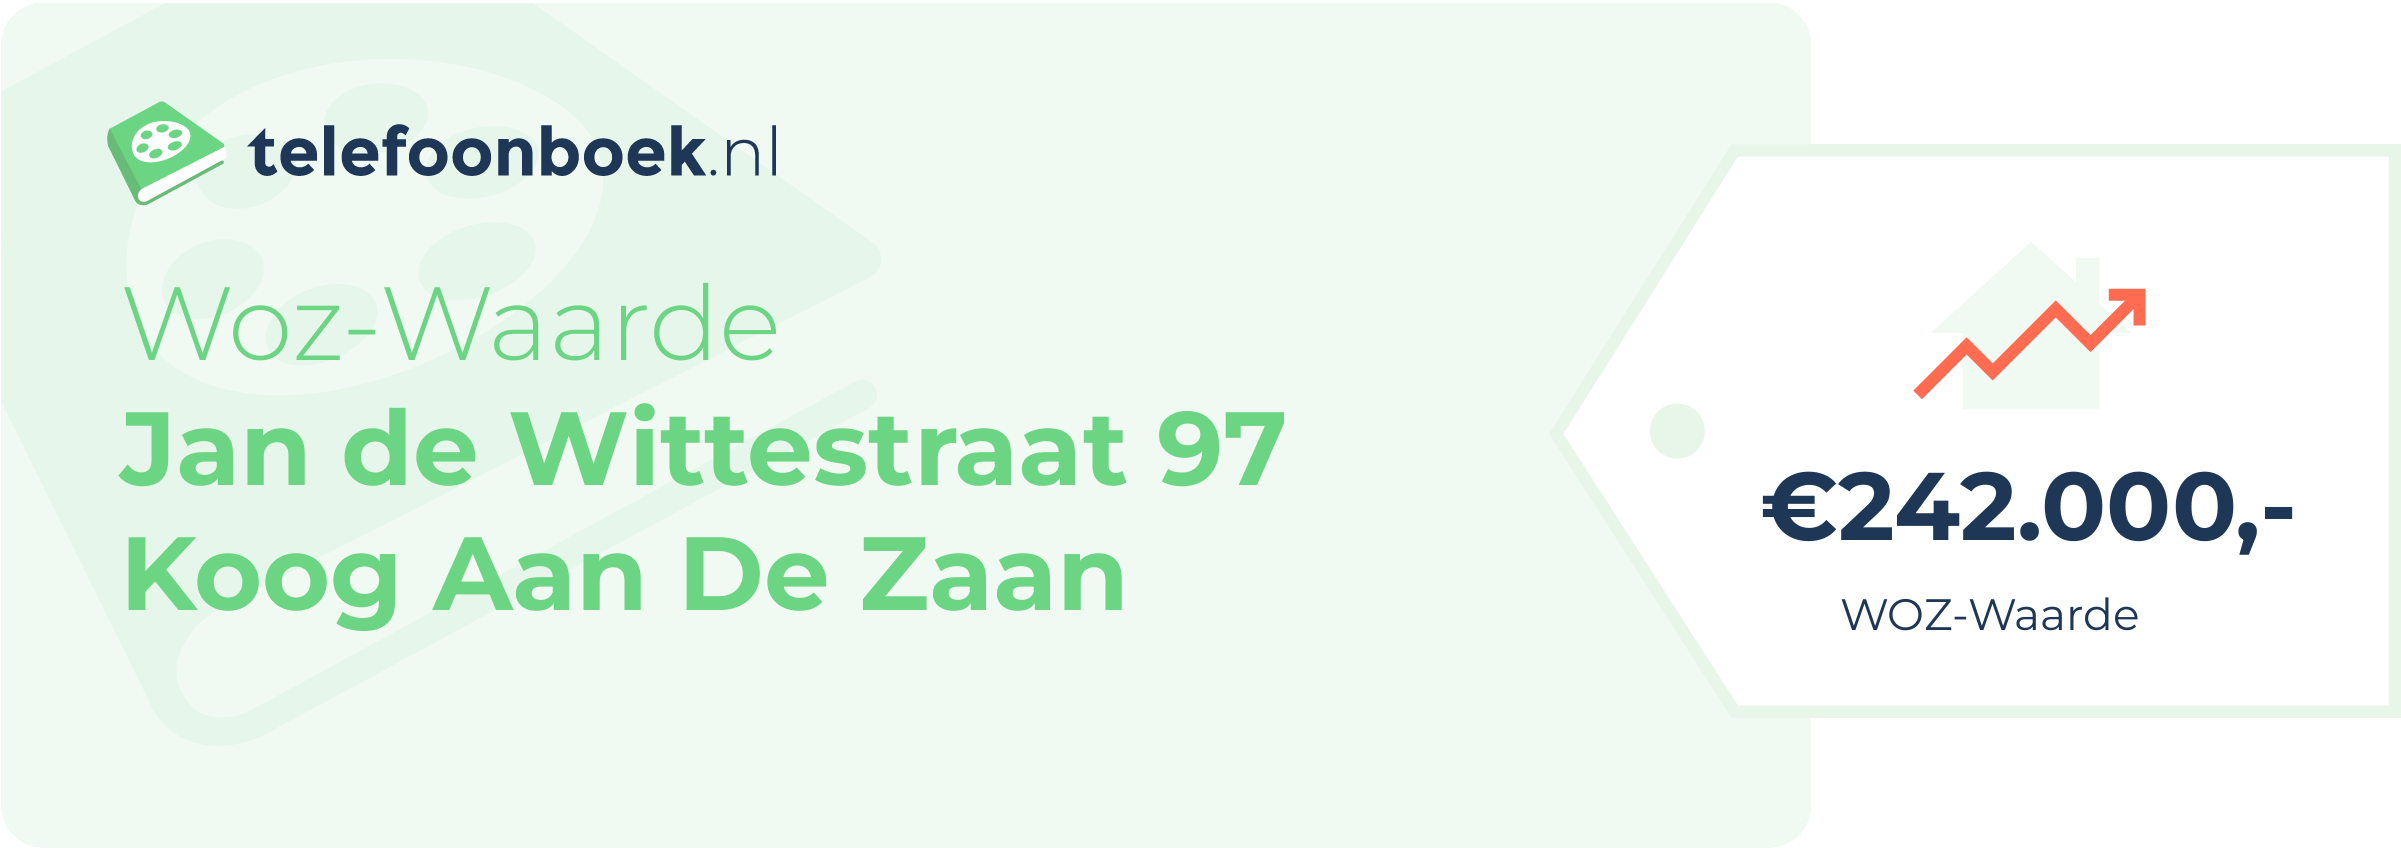 WOZ-waarde Jan De Wittestraat 97 Koog Aan De Zaan